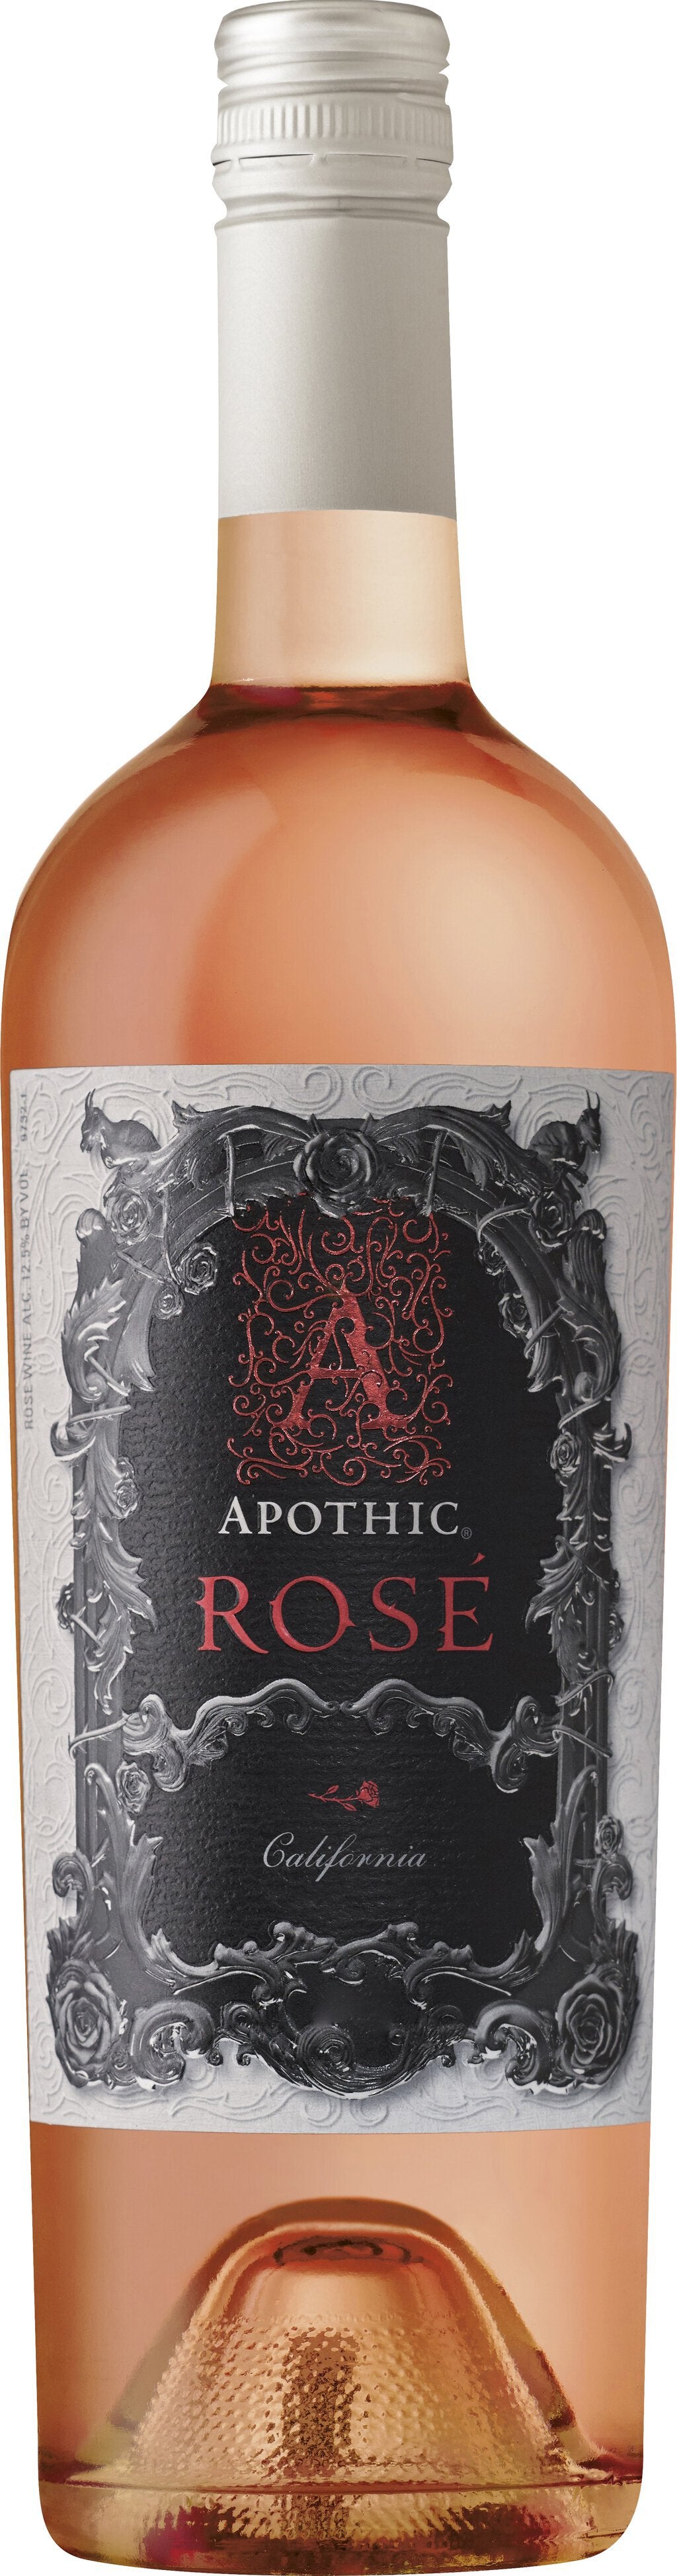 Apothic Rosé